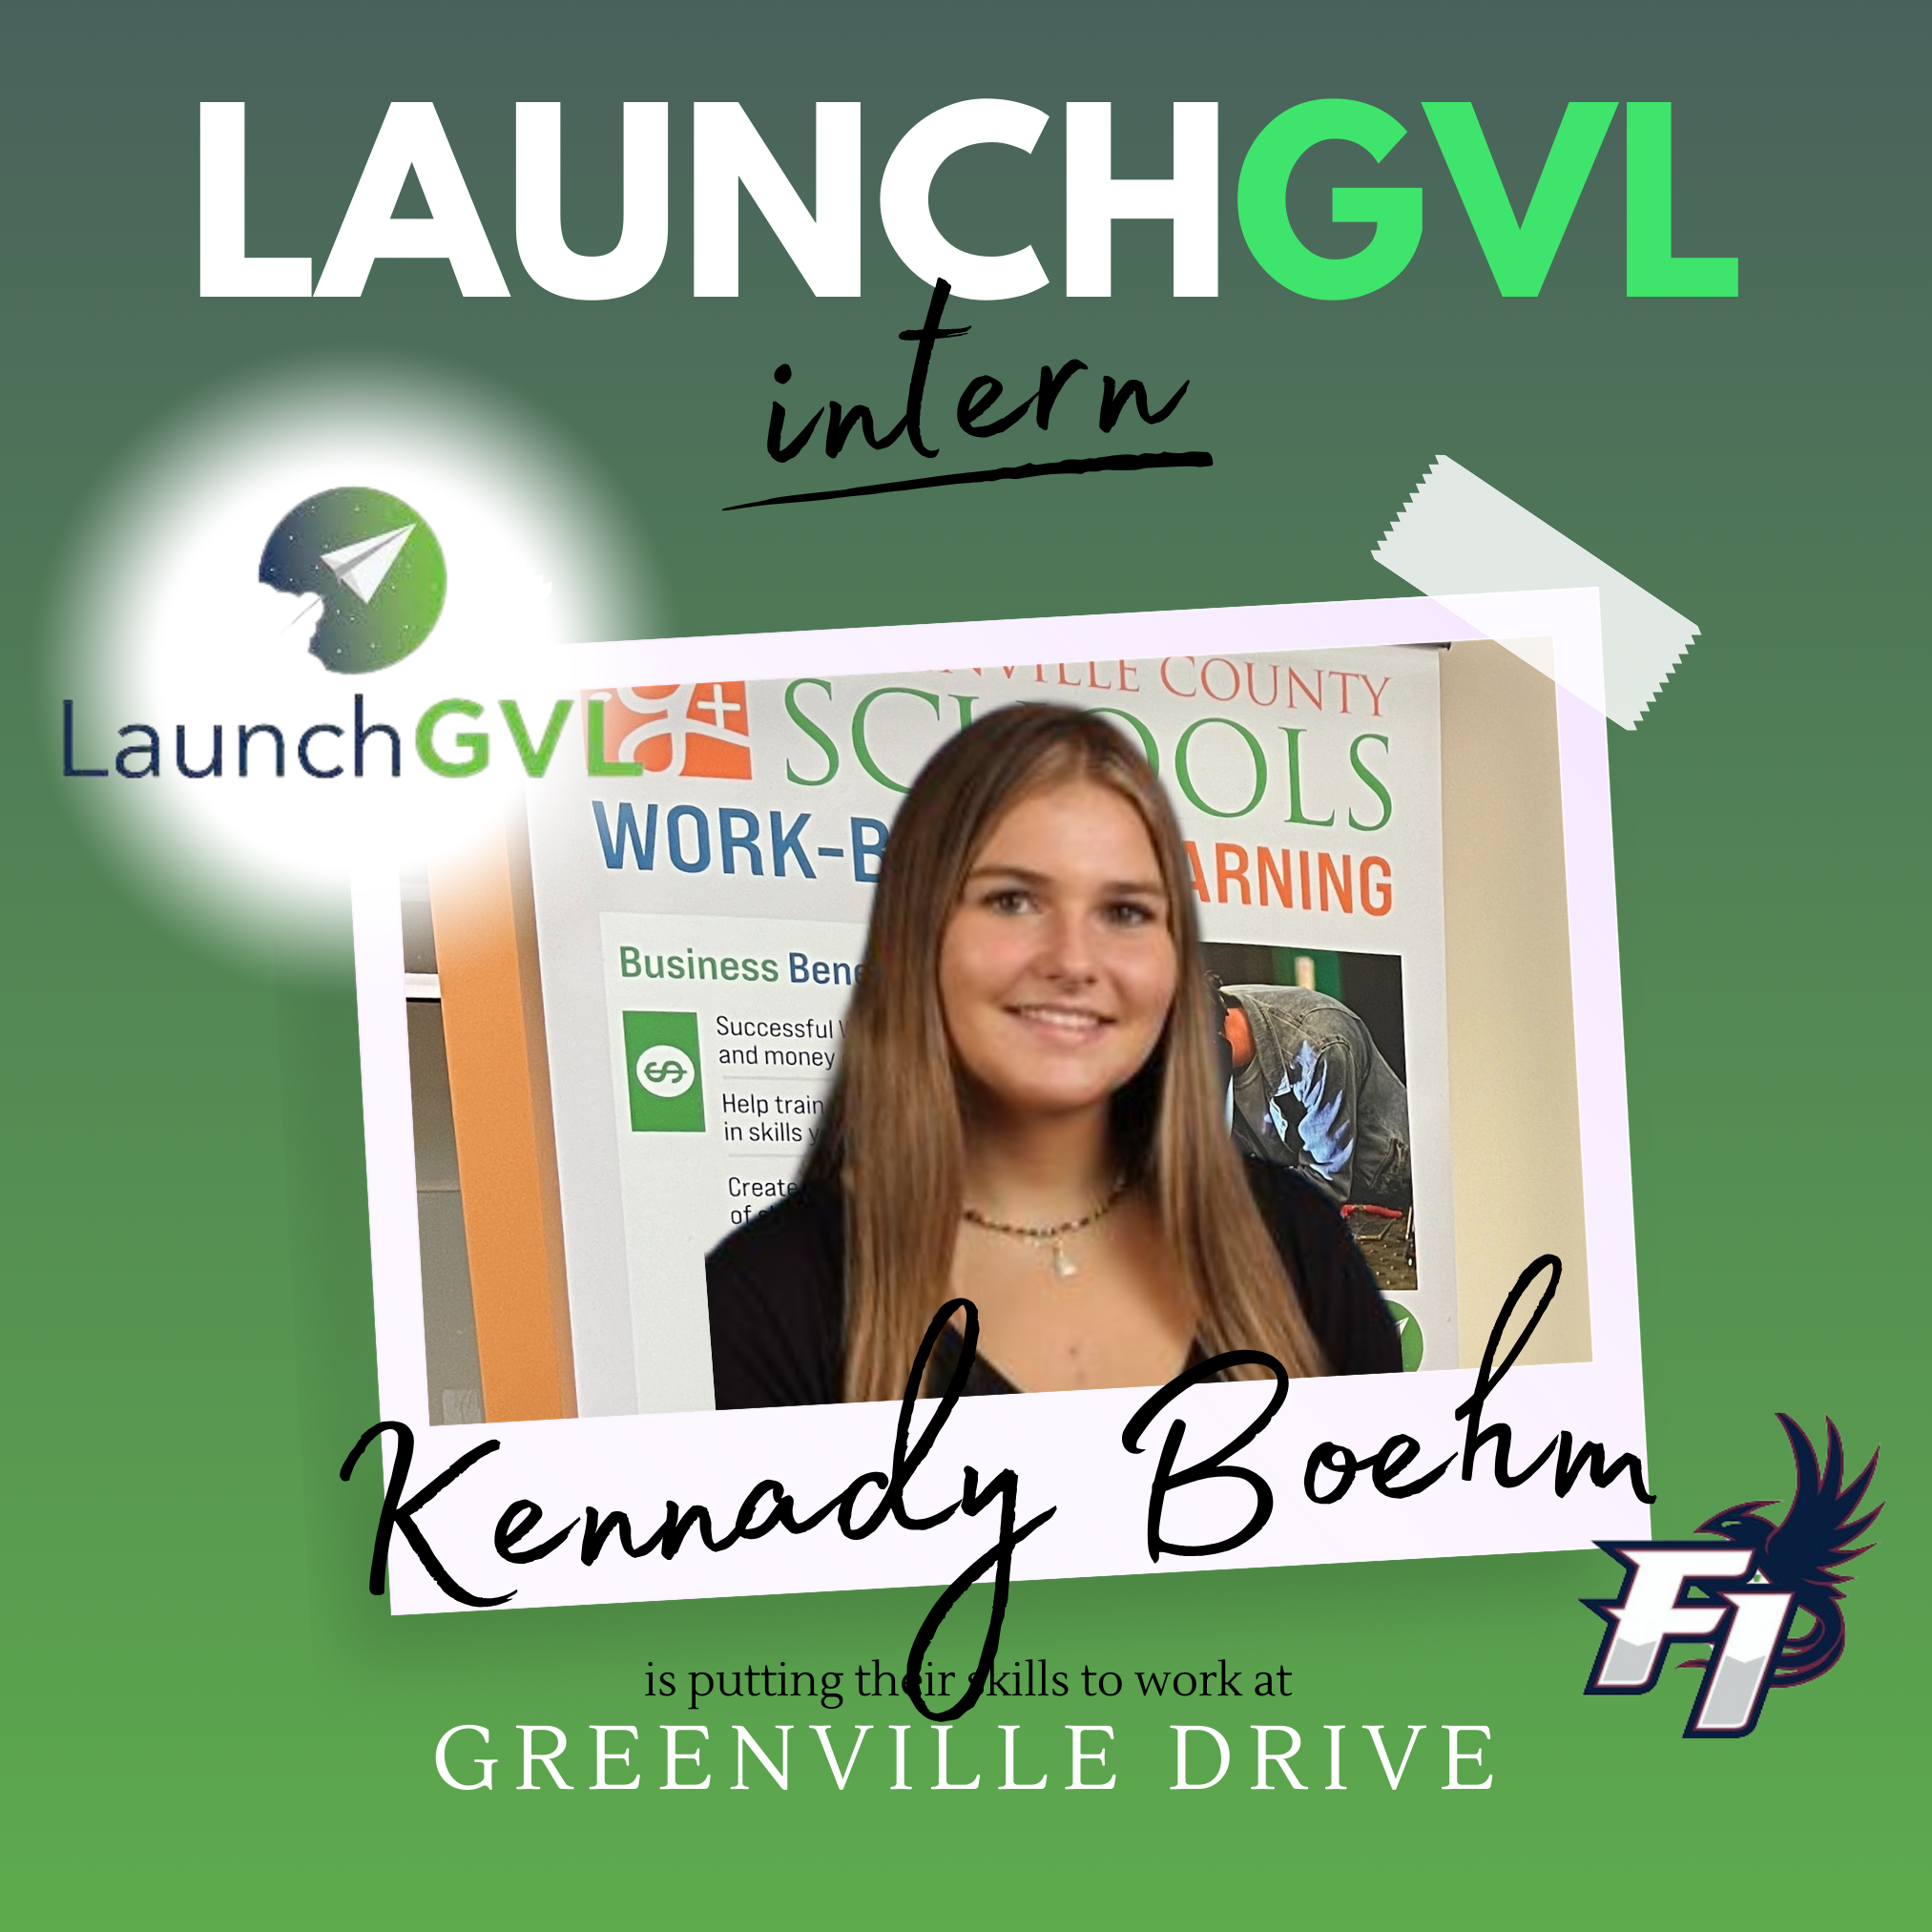 LaunchGVL Kennady Boehm